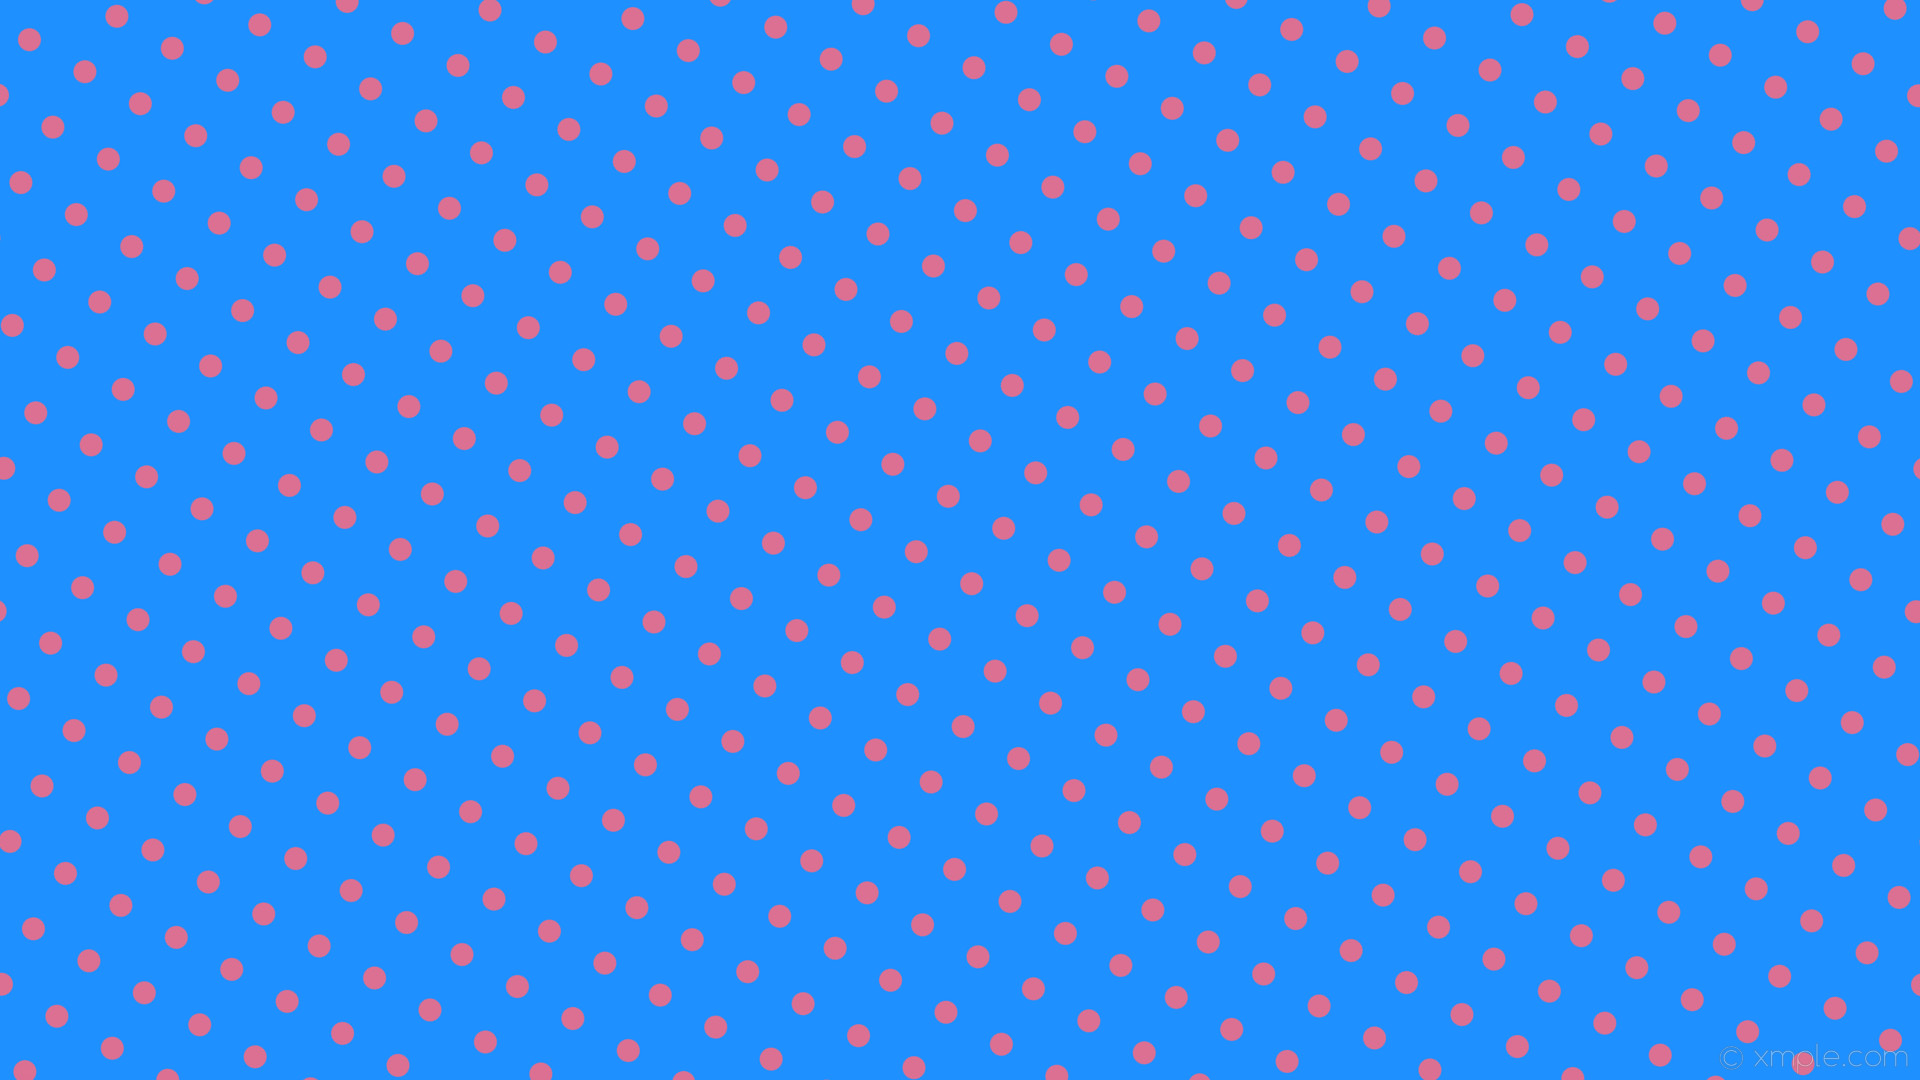 1920x1080 wallpaper spots pink blue polka dots dodger blue pale violet red #1e90ff  #db7093 330